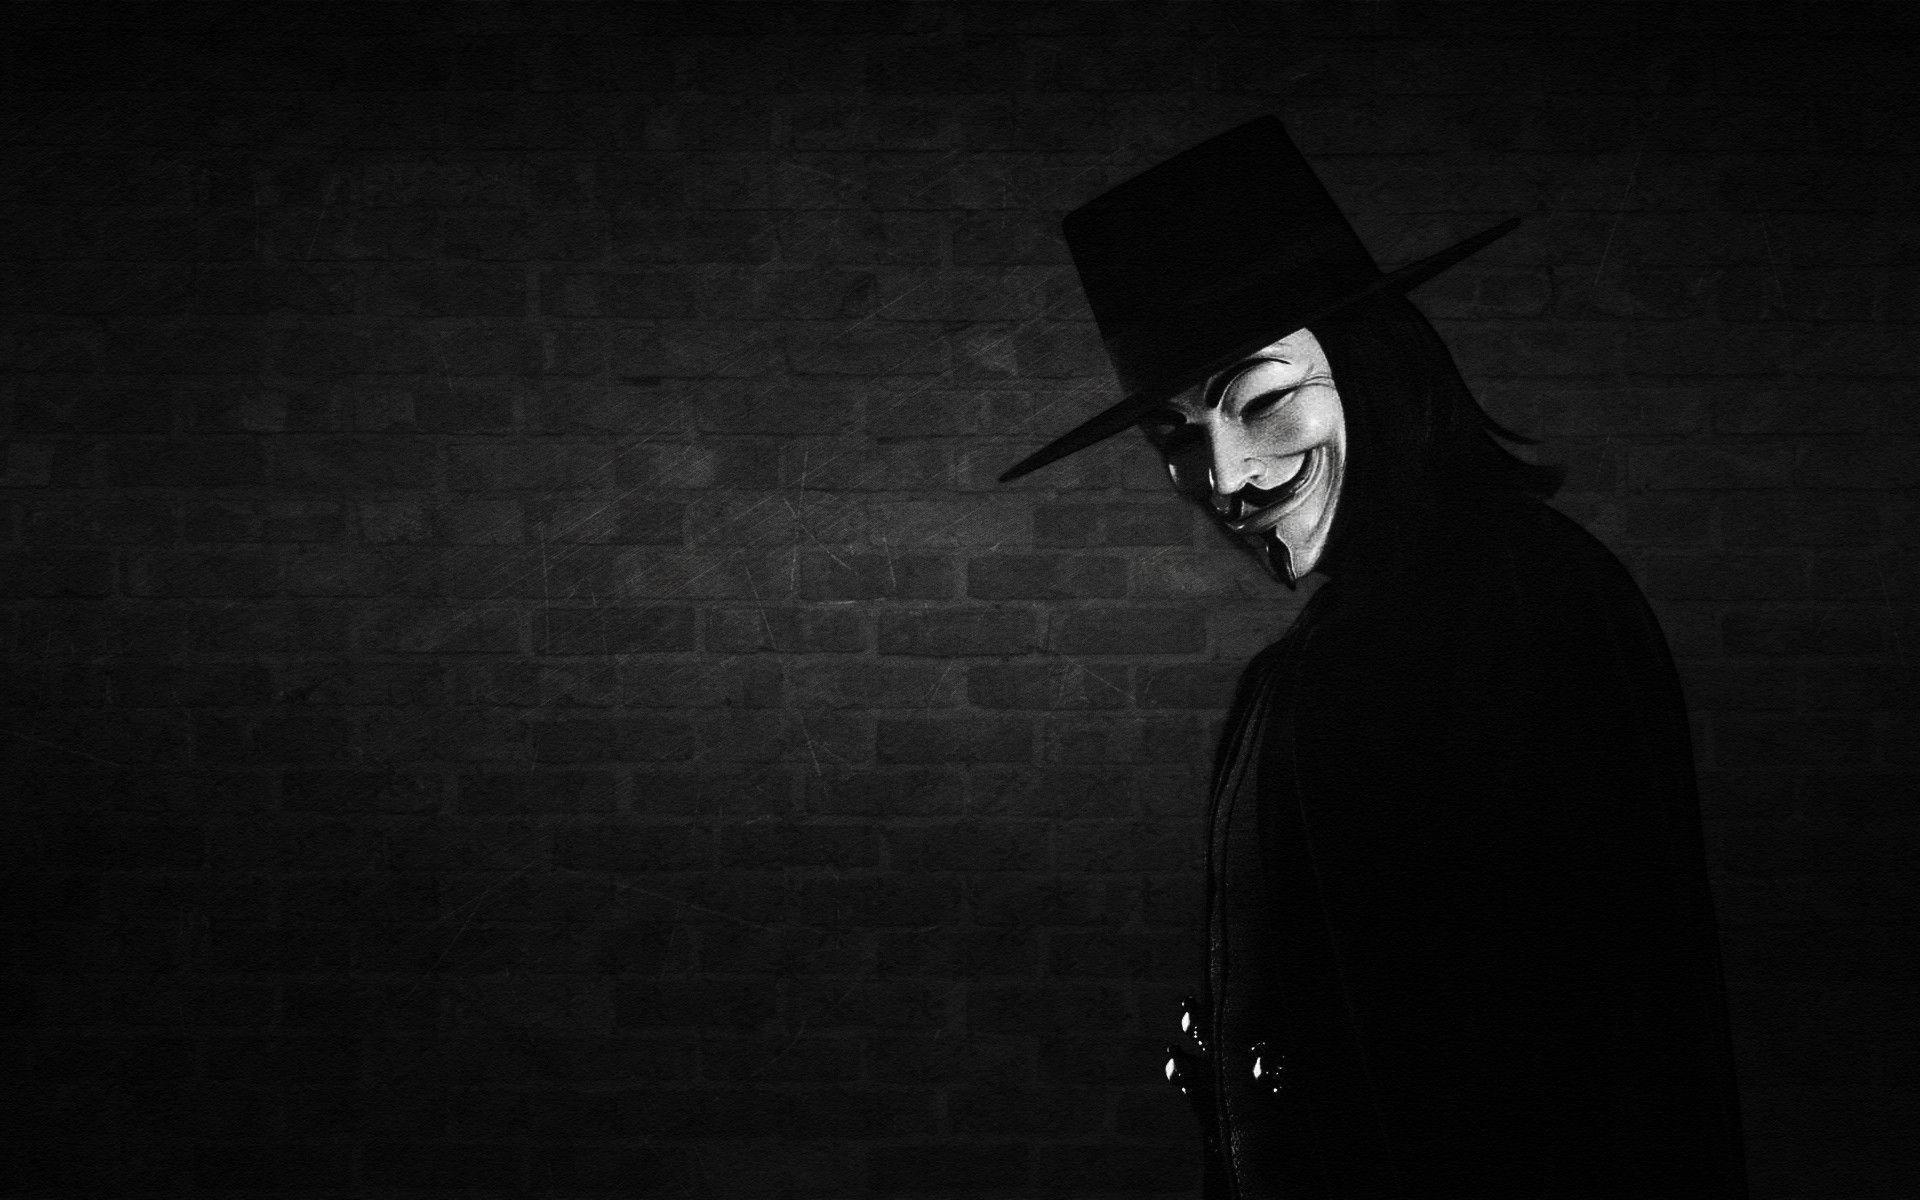 V for Vendetta Wallpapers - Top Free V for Vendetta Backgrounds